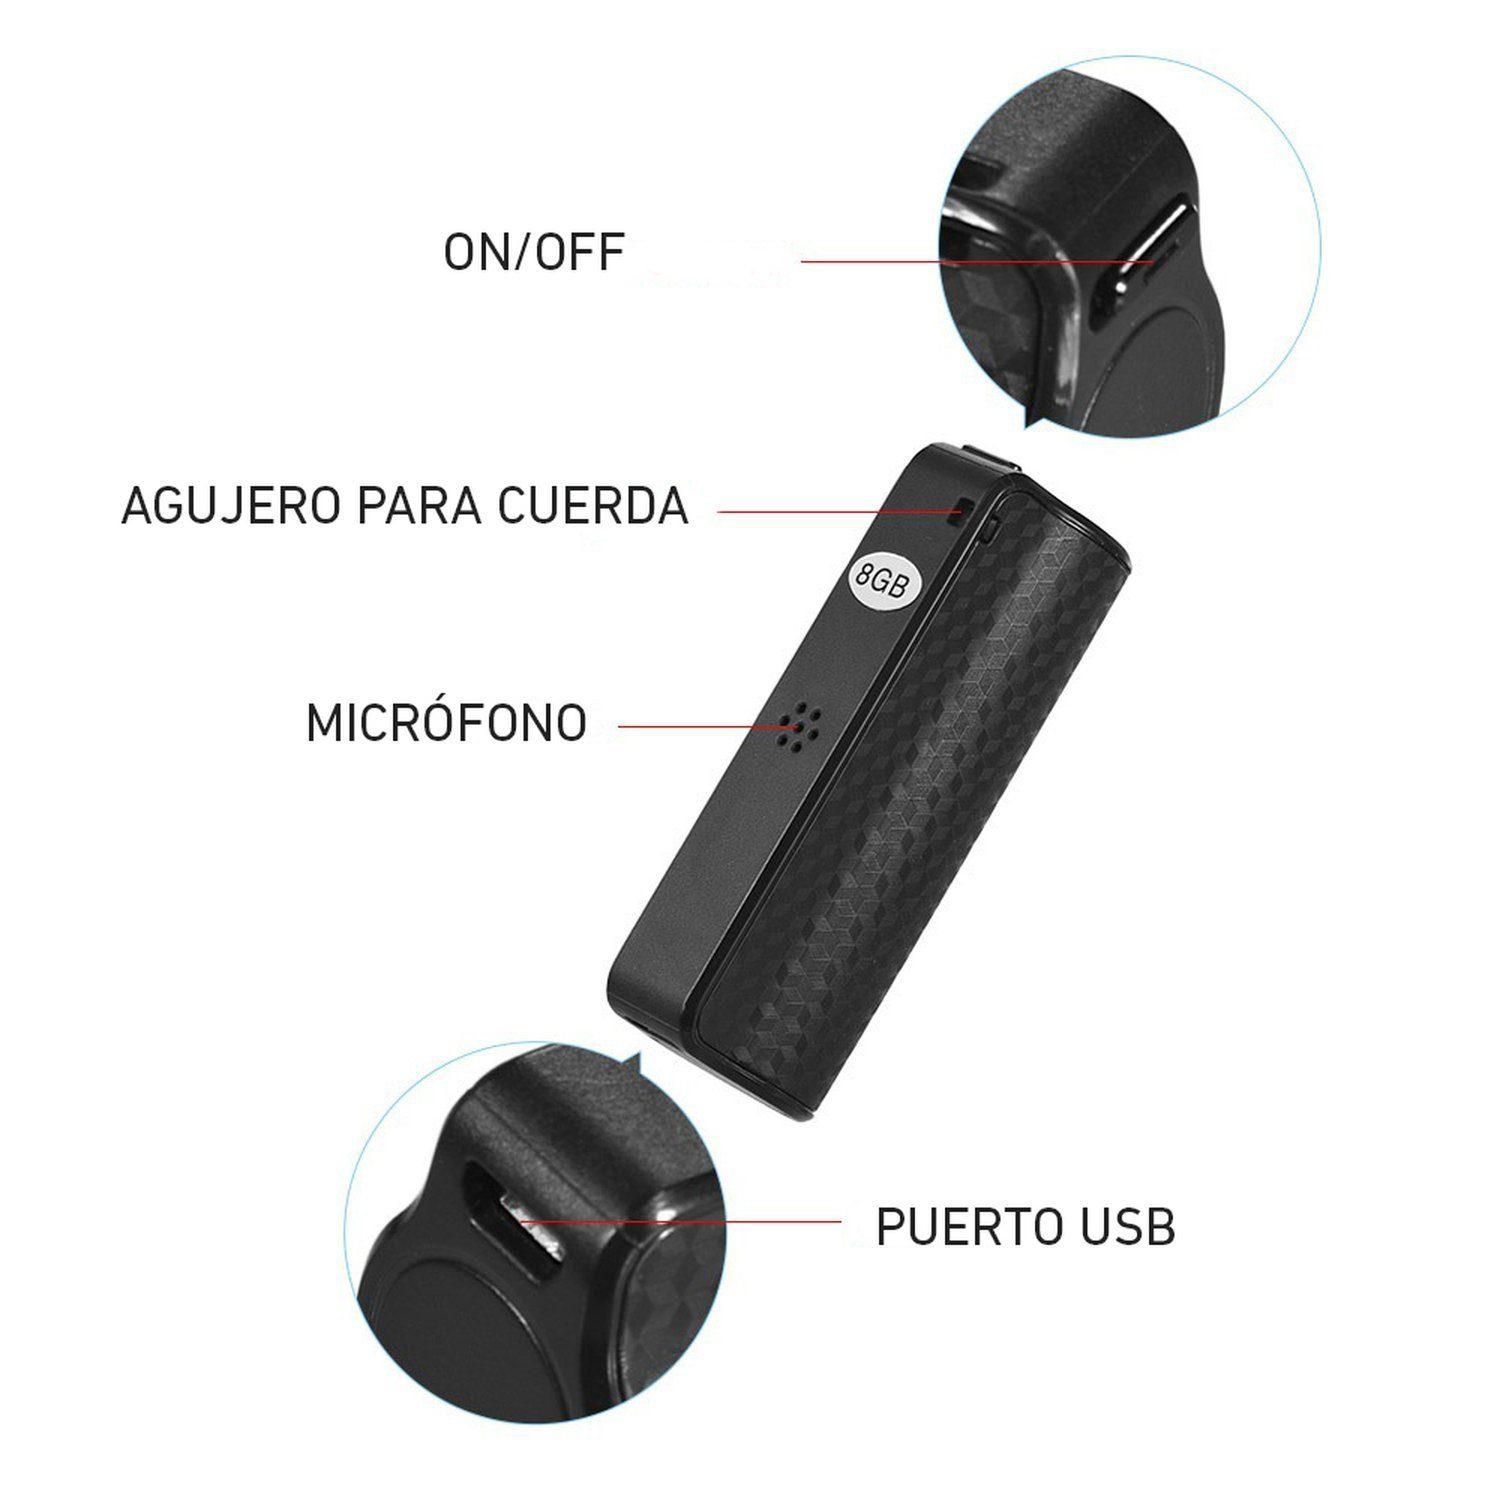 Microfono Mini Grabadora Espia Magnetica De Voz 8gb Larga Duración